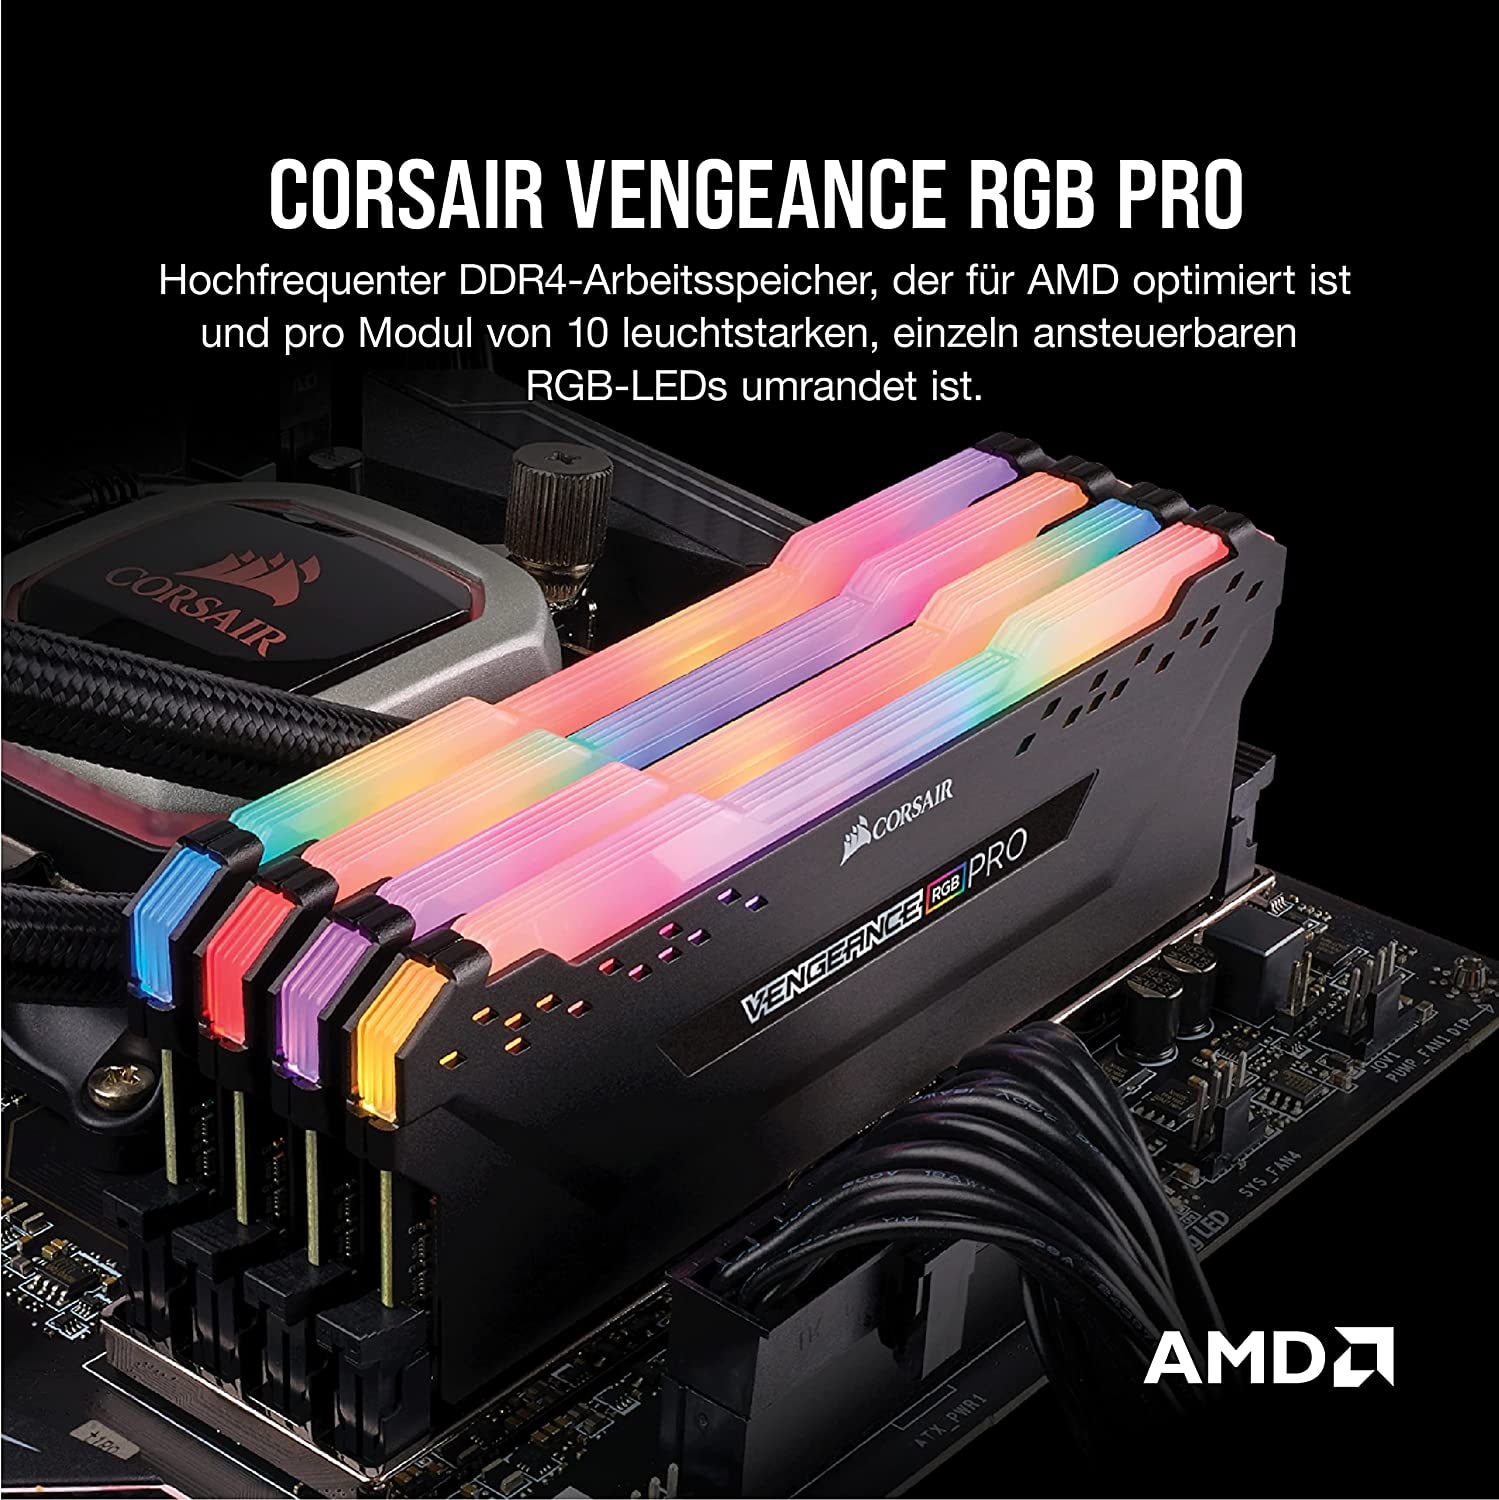 Corsair Arbeitsspeicher »Vengeance RGB PRO 2x32GB Online 64GB OTTO jetzt DDR4, im Shop DIMM« 3600MHz